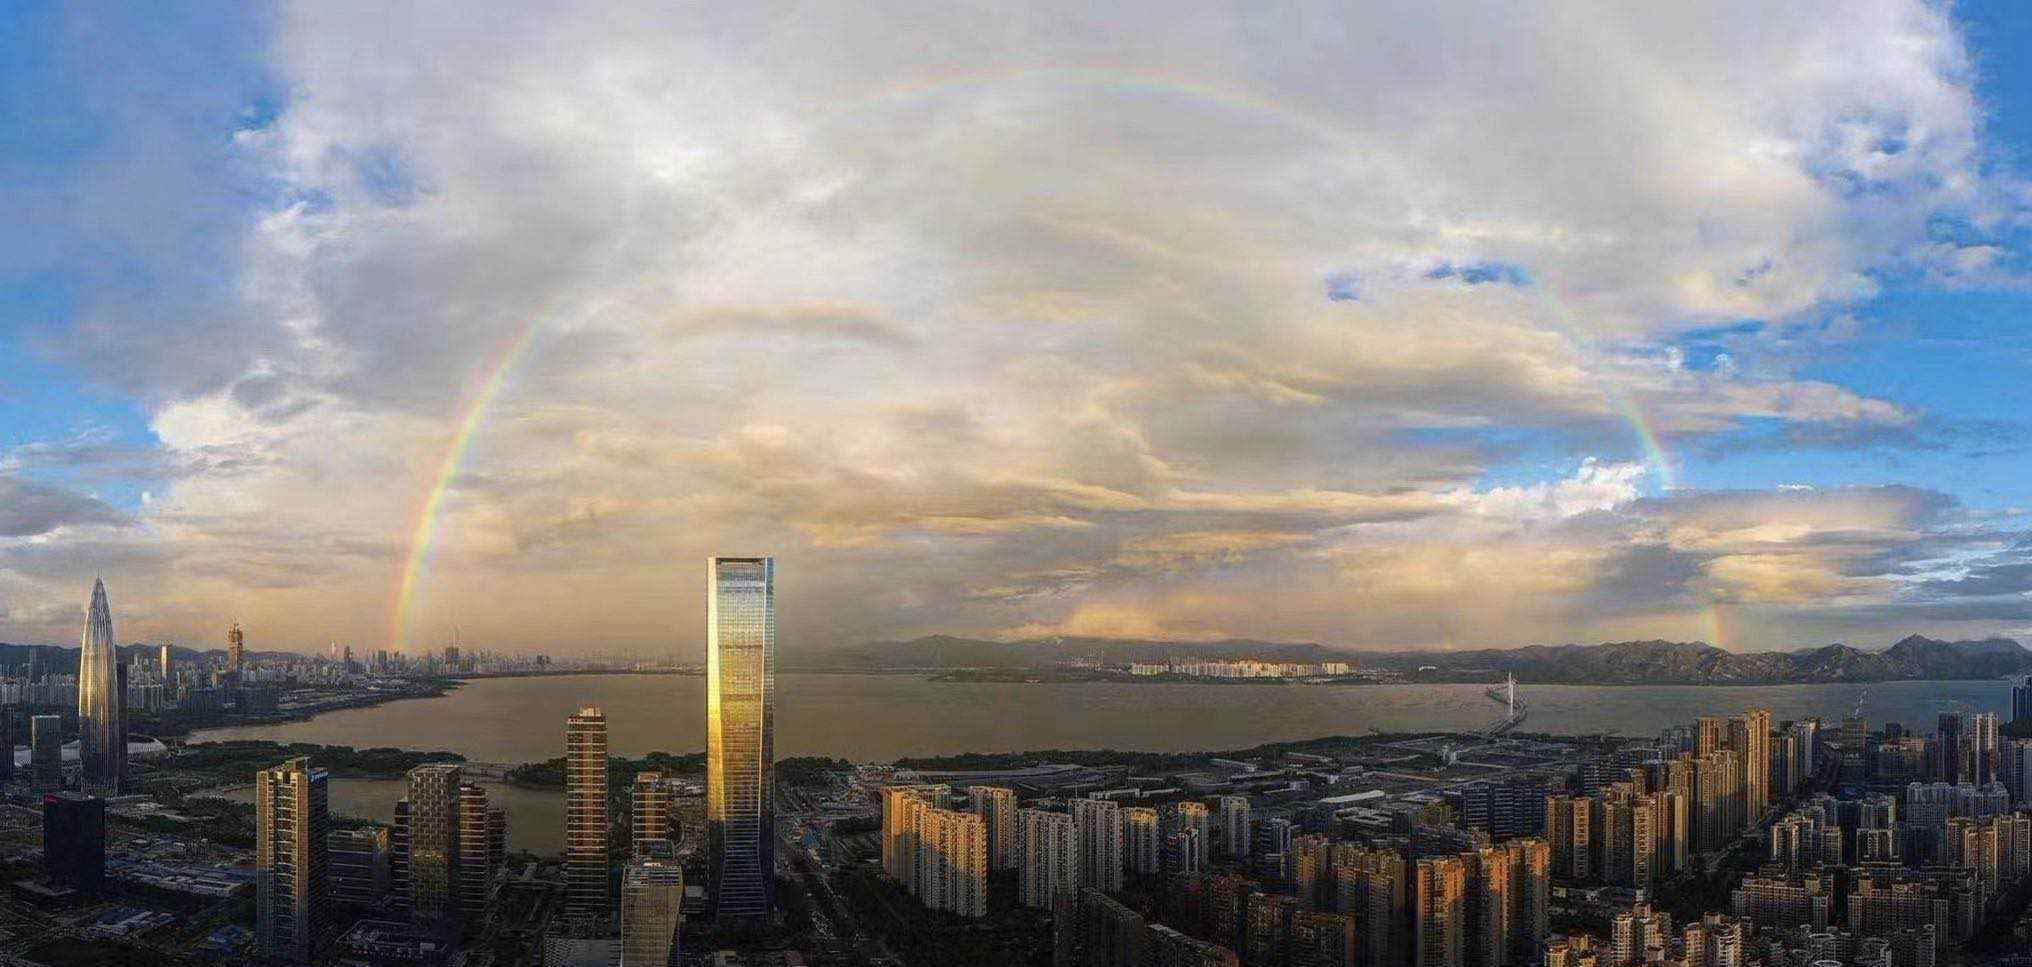 深圳连到香港的彩虹 具体是啥情况?